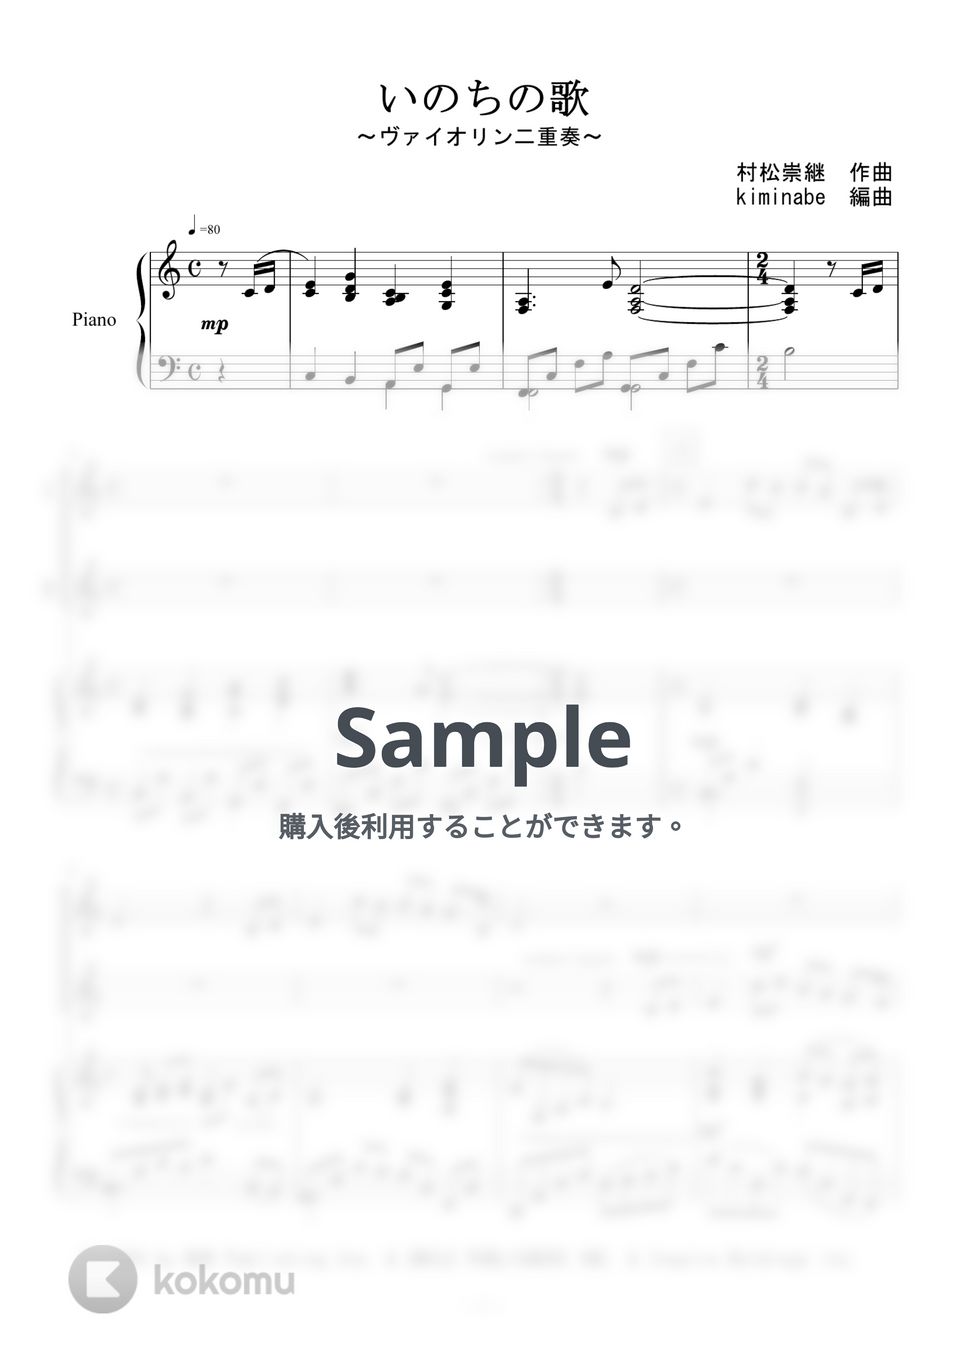 竹内まりや - いのちの歌 (ヴァイオリン二重奏) by kiminabe